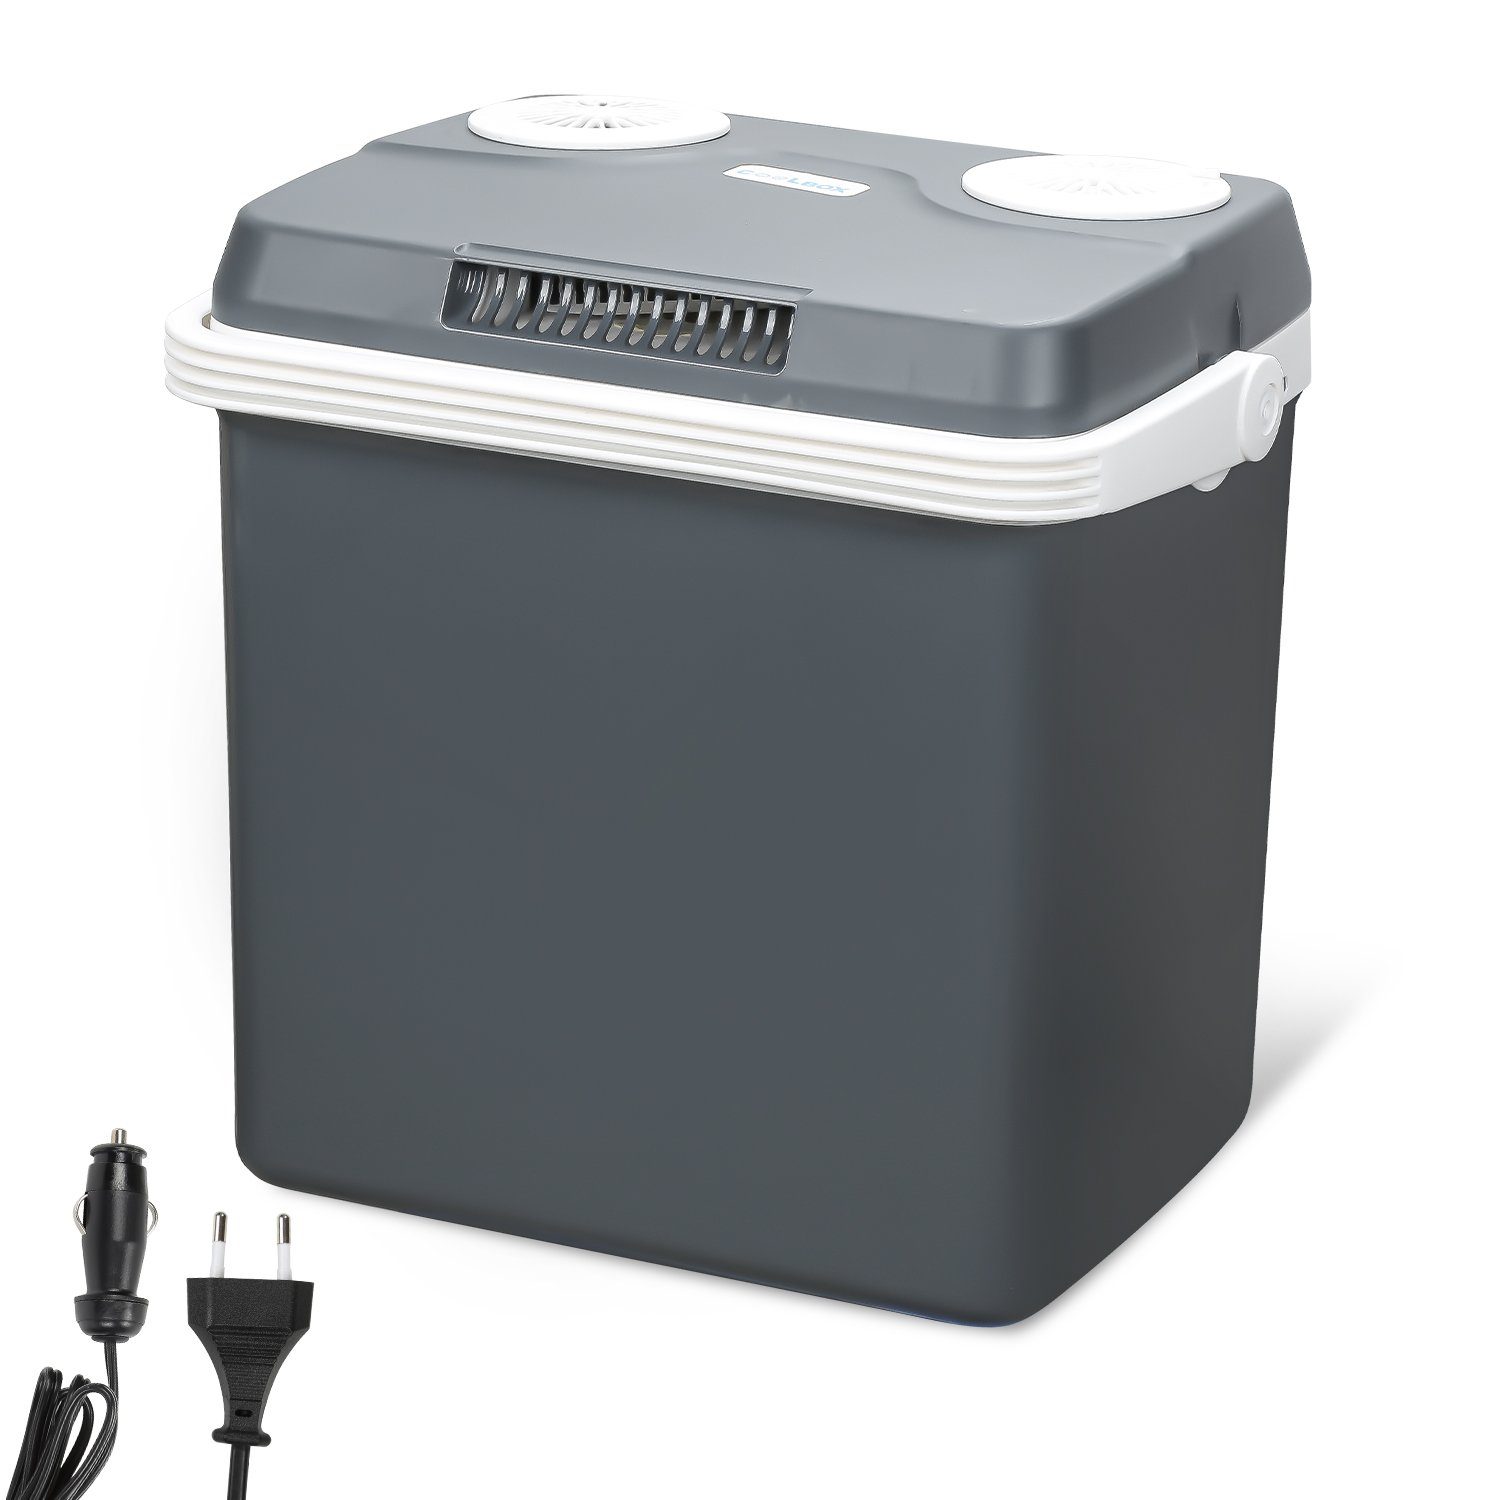 Clanmacy Outdoor-Flaschenkühler Kühlbox 32 Liter 12V 230V WÄRMT & KÜHLT Mini -Kühlschrank, A++ mit ECO-Modus Elektrische Kühlbox für Auto, Boot, Camping